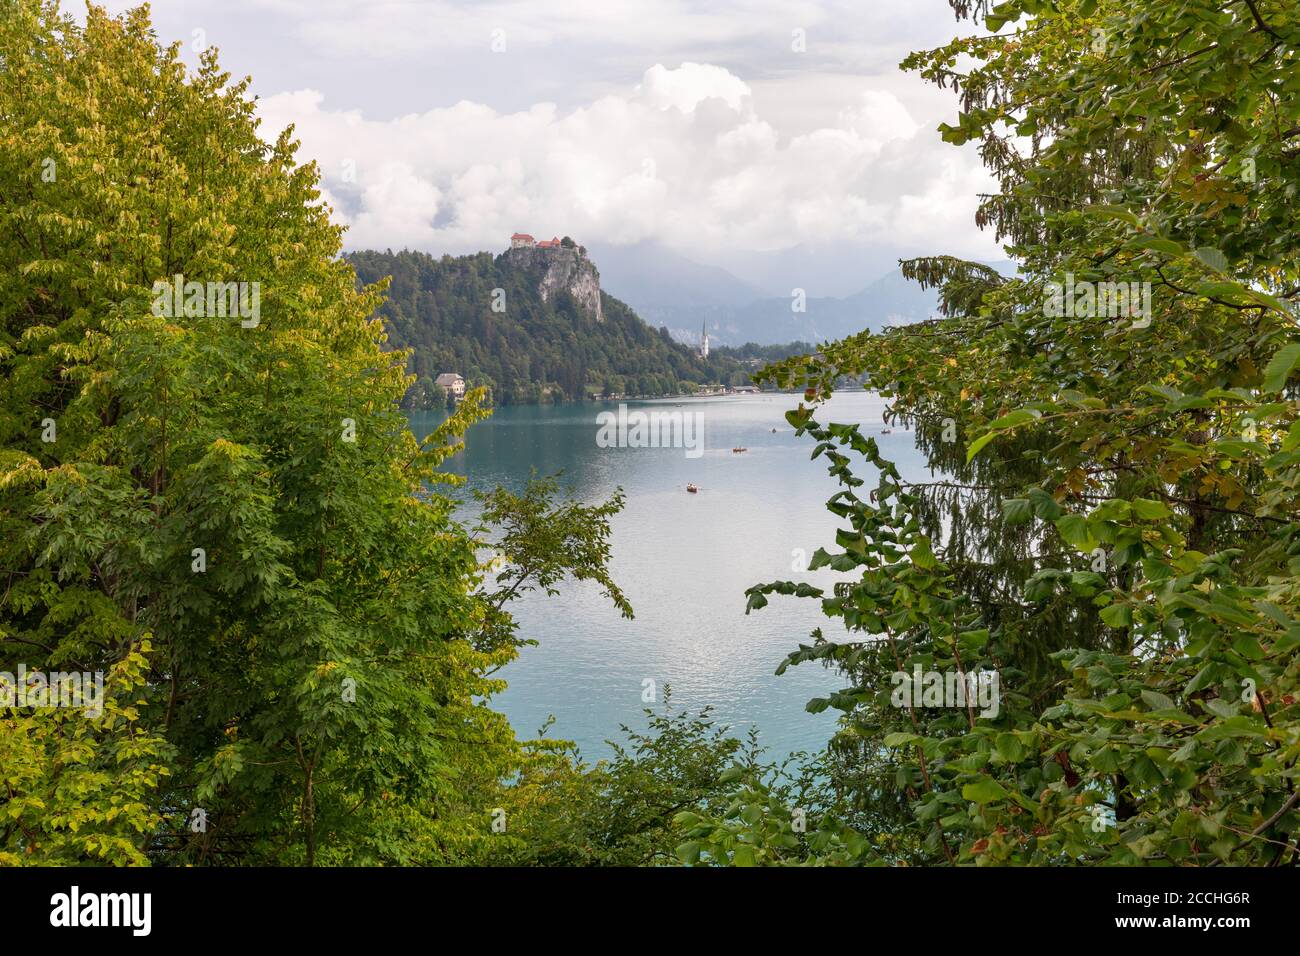 Iconico paesaggio sloveno, con un lontano castello accoccolato su un promontorio che si affaccia sul lago Bled, incorniciato da vegetazione verde Foto Stock